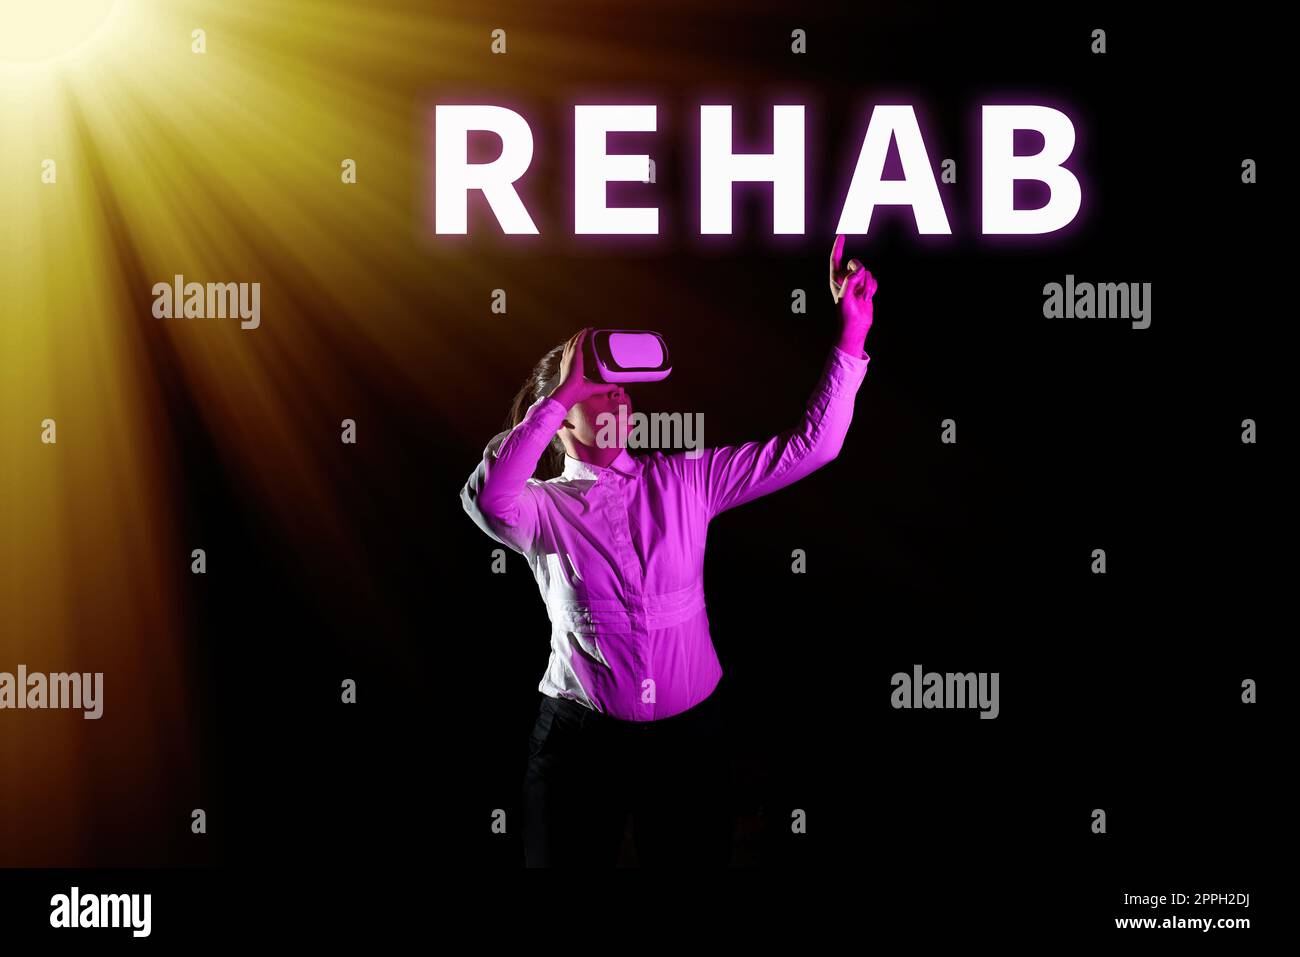 Inspiration mit Zeichen Rehab. Konzeptionelle Photoverlaufsbehandlung bei Alkoholabhängigkeit typischerweise in Wohngebieten Stockfoto